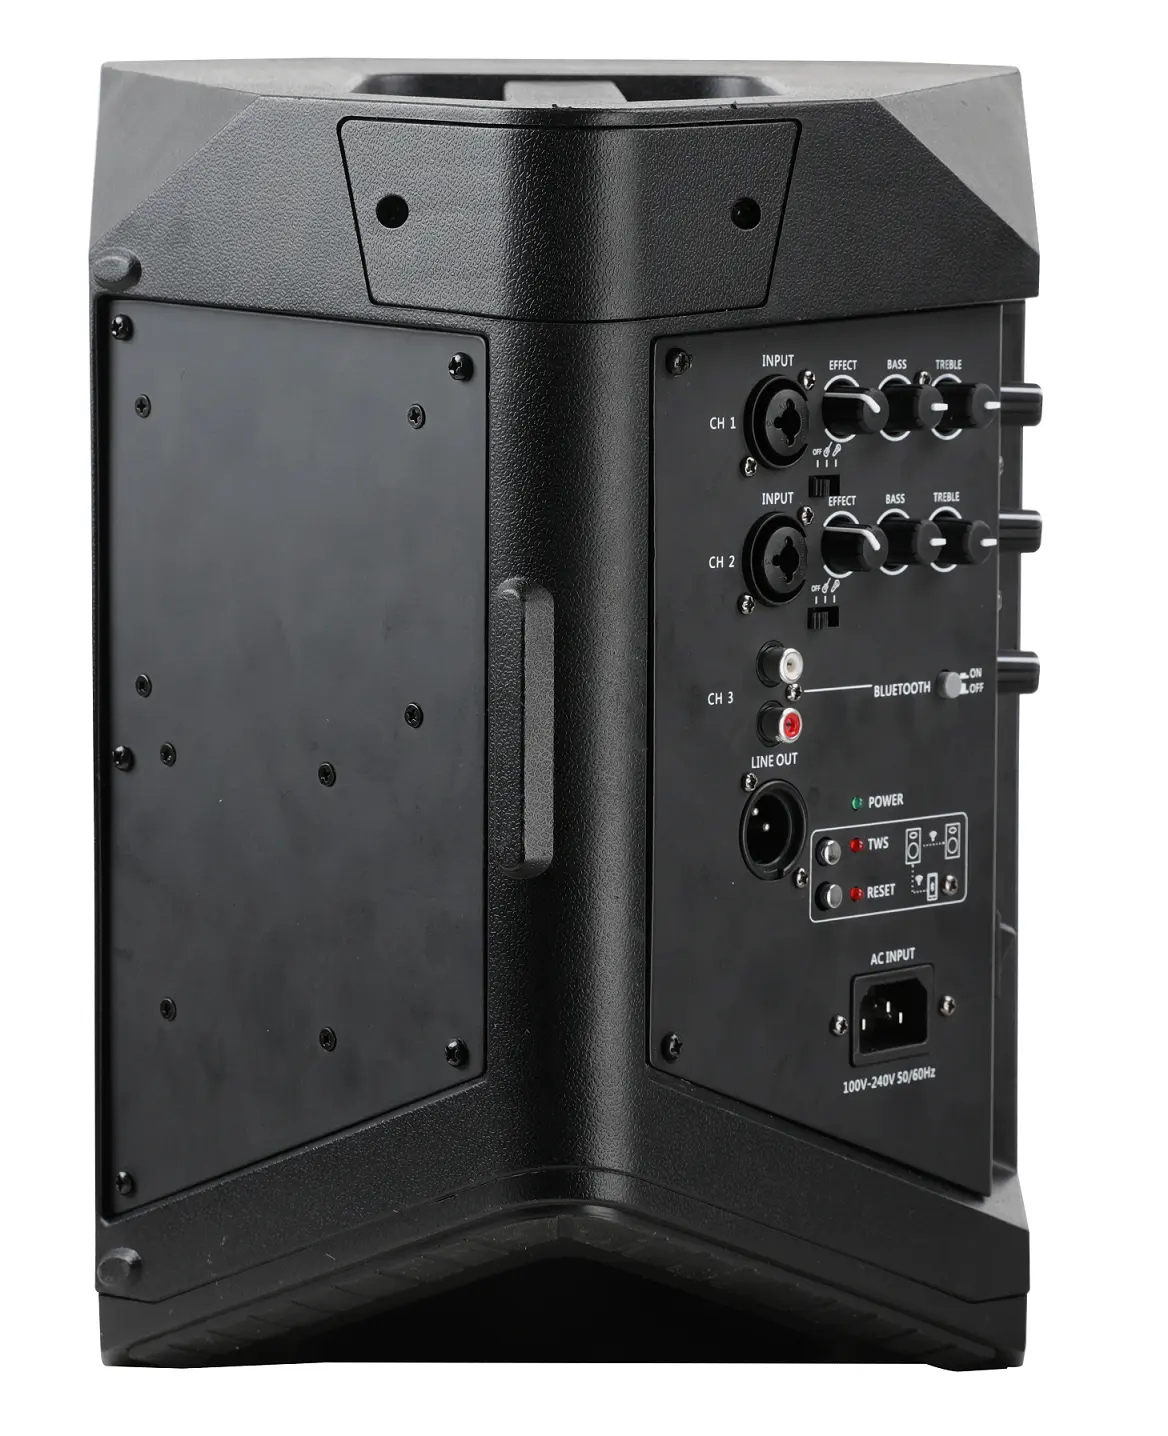 Caixa profissional do orador do sistema sadio oradores ativos da bateria do bluetooth 6.5 inch